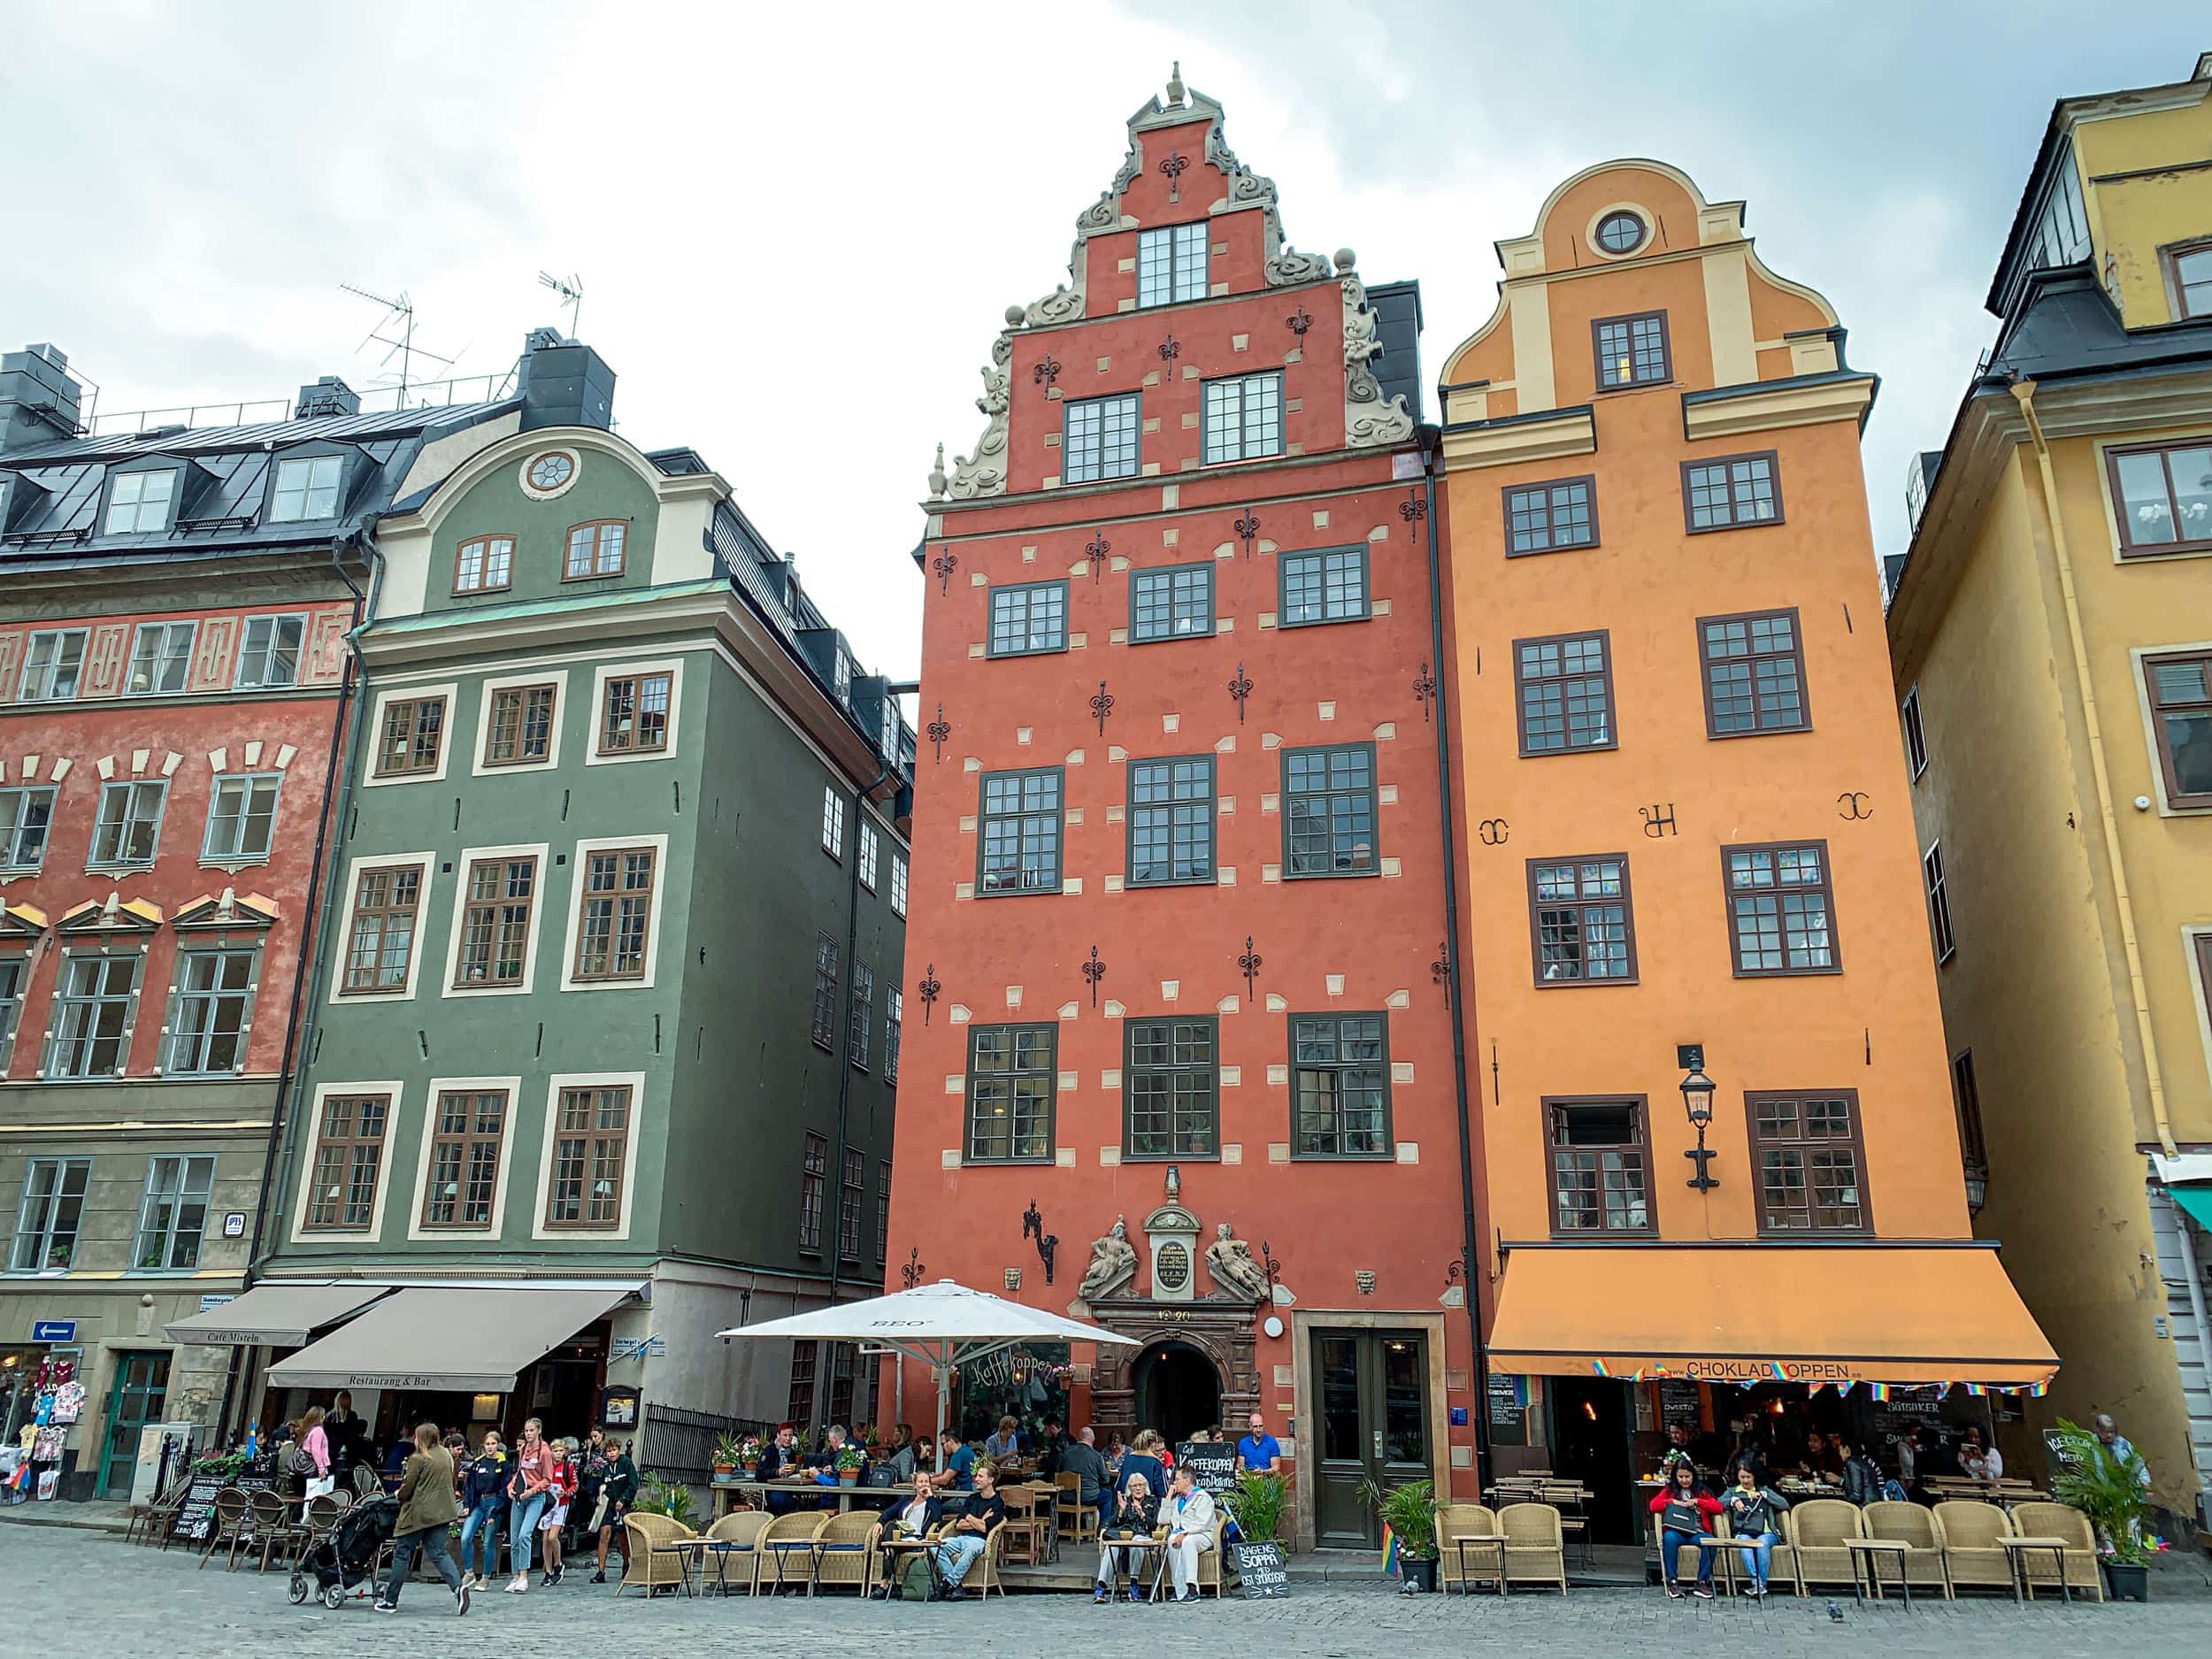 Stortorget is the oldest square in Stockholm, Sweden